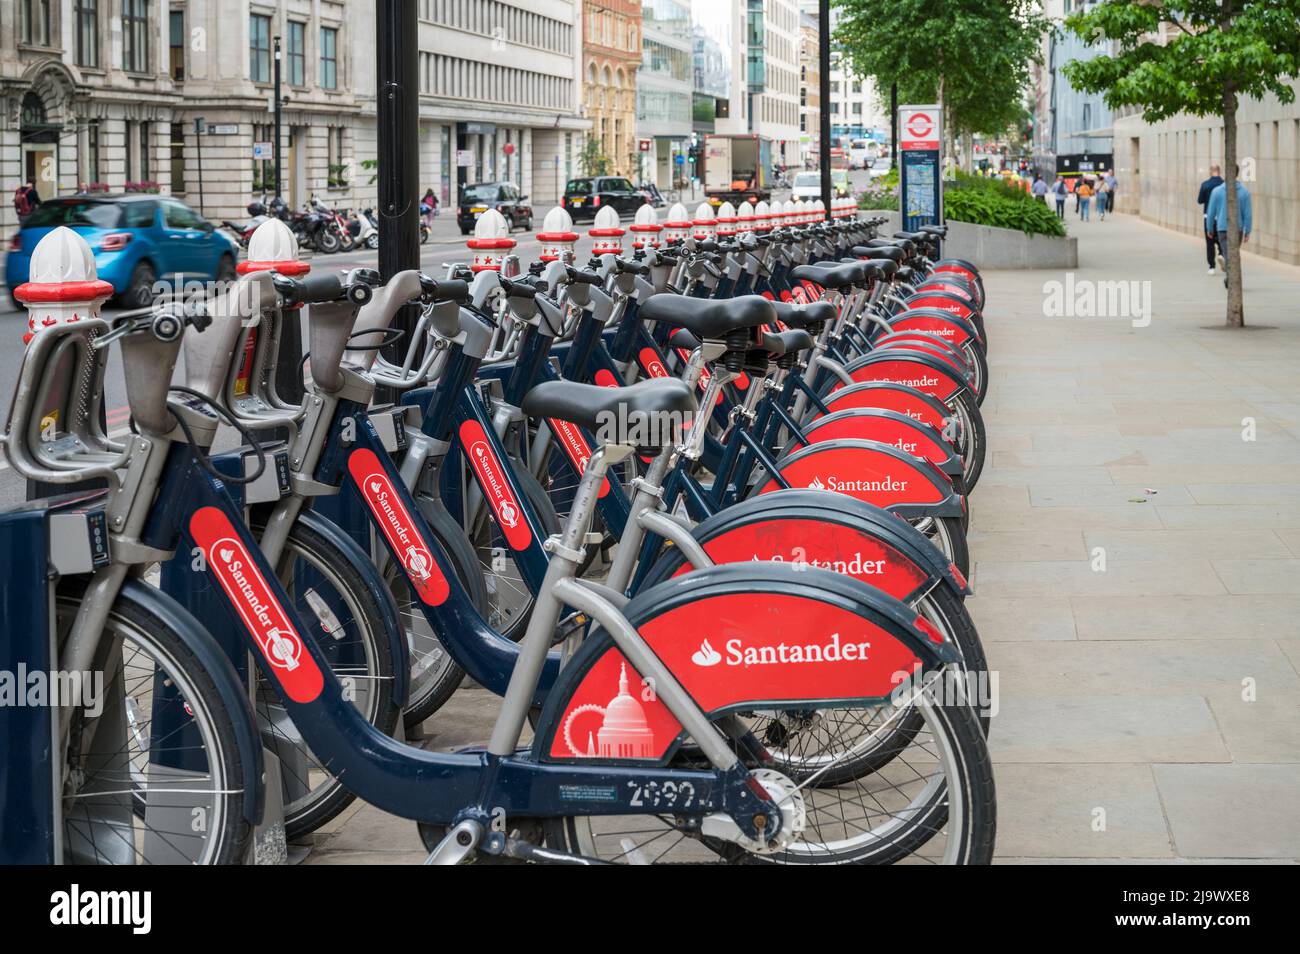 Une ligne de Santander a parrainé la location publique de vélos garés dans une station d'accueil sur Farringdon Street, Londres, Angleterre, Royaume-Uni. Banque D'Images